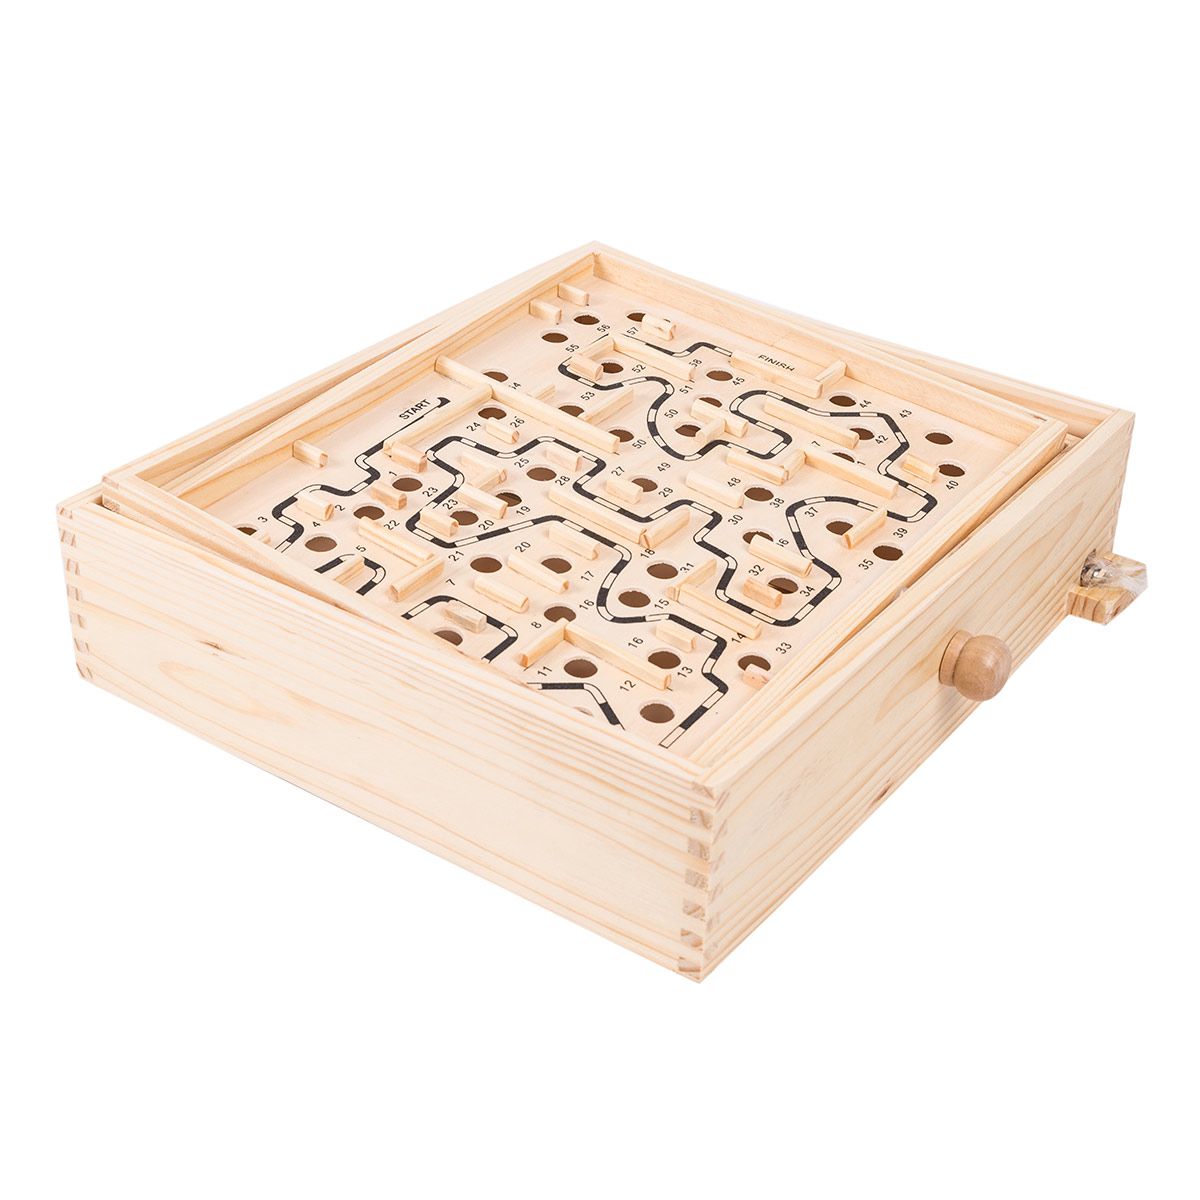 Grand labyrinthe en bois, un jeu de précision et d'adresse pour tous